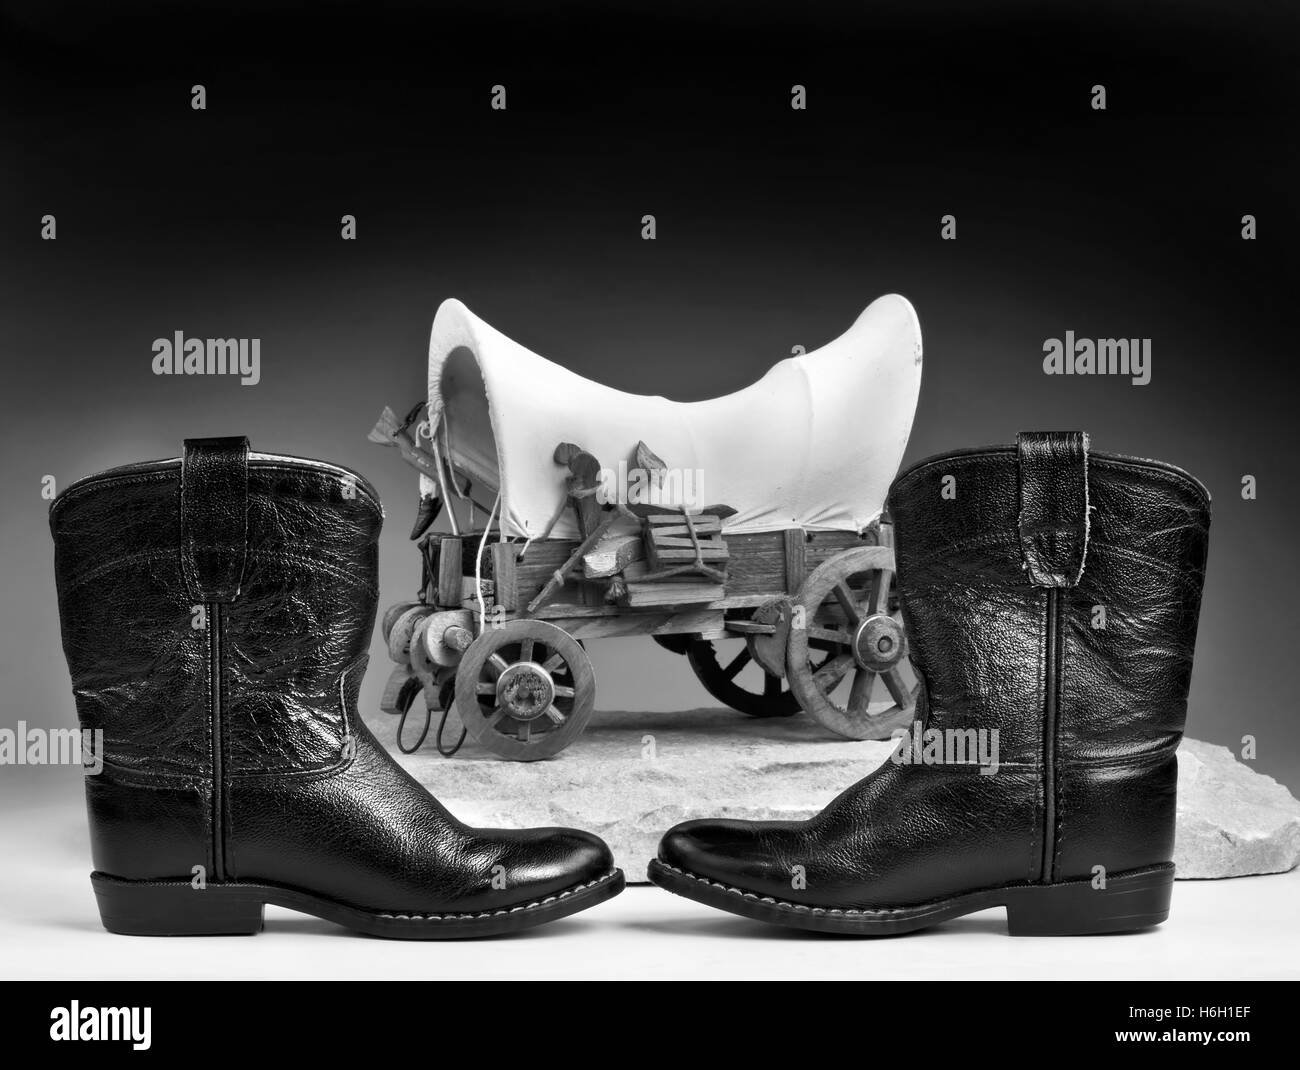 Kinder Cowboystiefel schwarz und Planwagen mit Platz für Ihren Typ in  schwarz und weiß Stockfotografie - Alamy